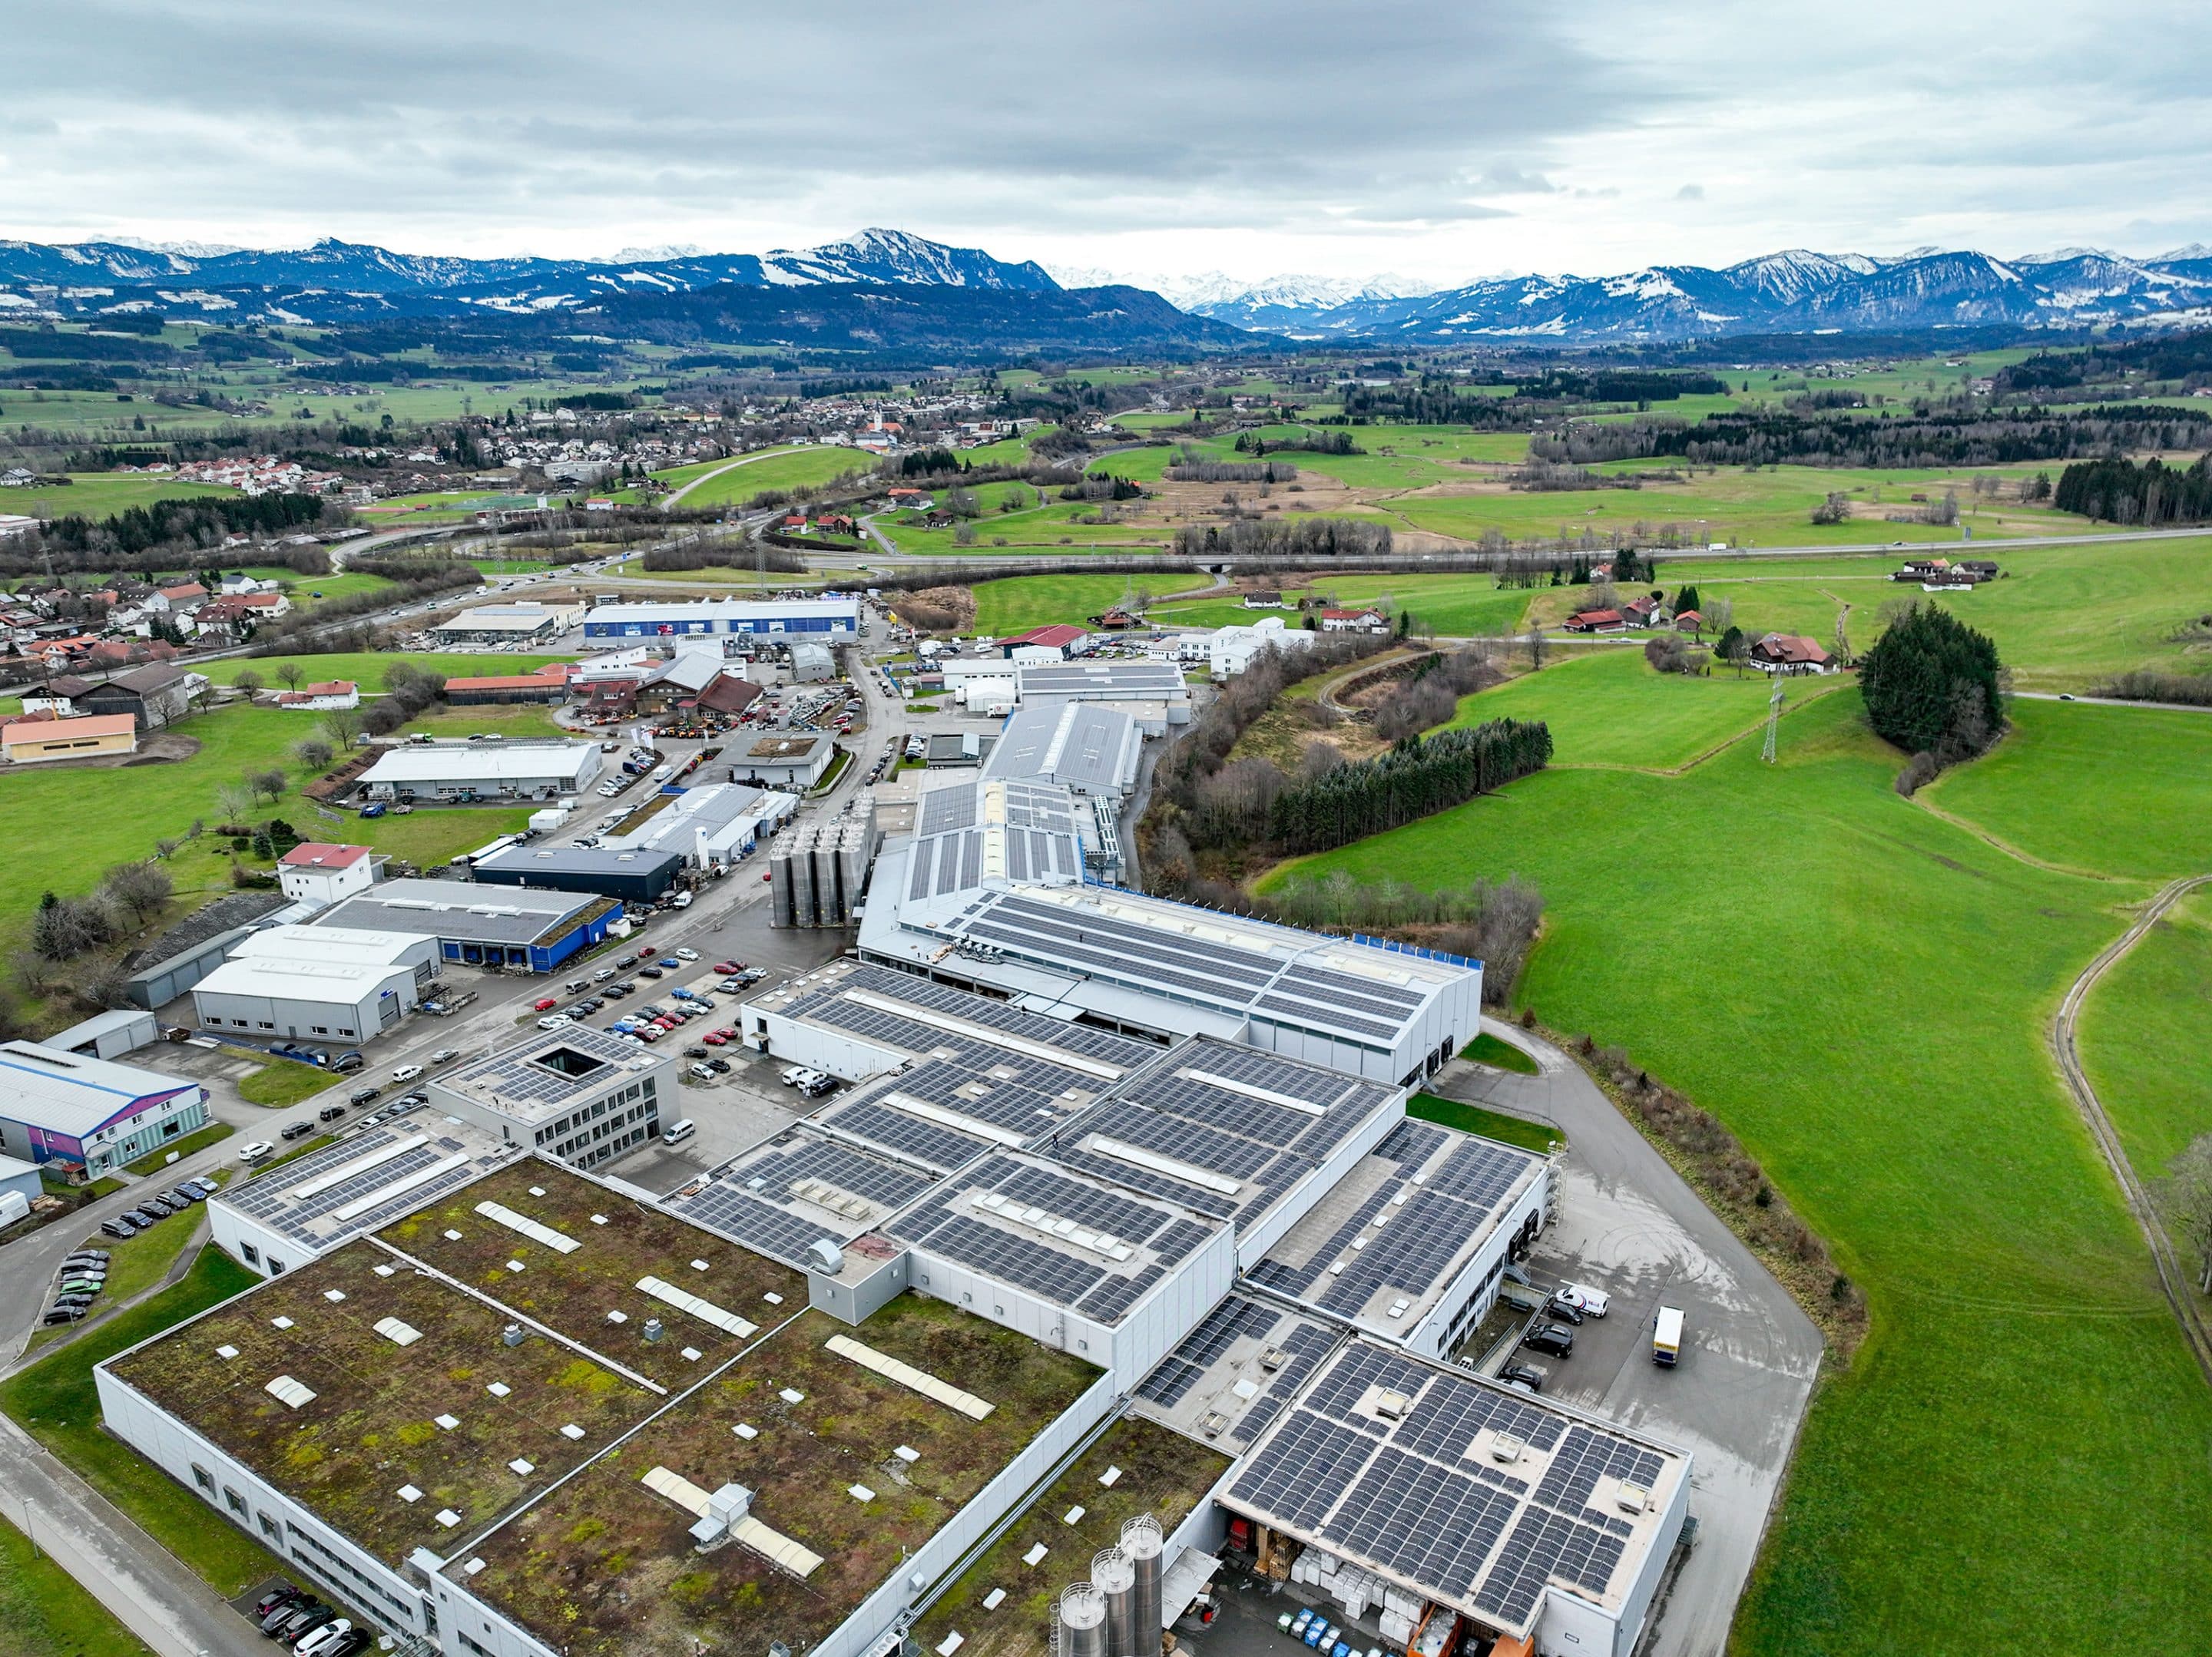 Eine der größten Aufdach-Solaranlagen Bayerns: Die Photovoltaik-Anlage auf dem Firmendach bei allvac in Waltenhofen spart umgerechnet rund 2.500 Tonnen CO2 im Jahr. Foto: allvac